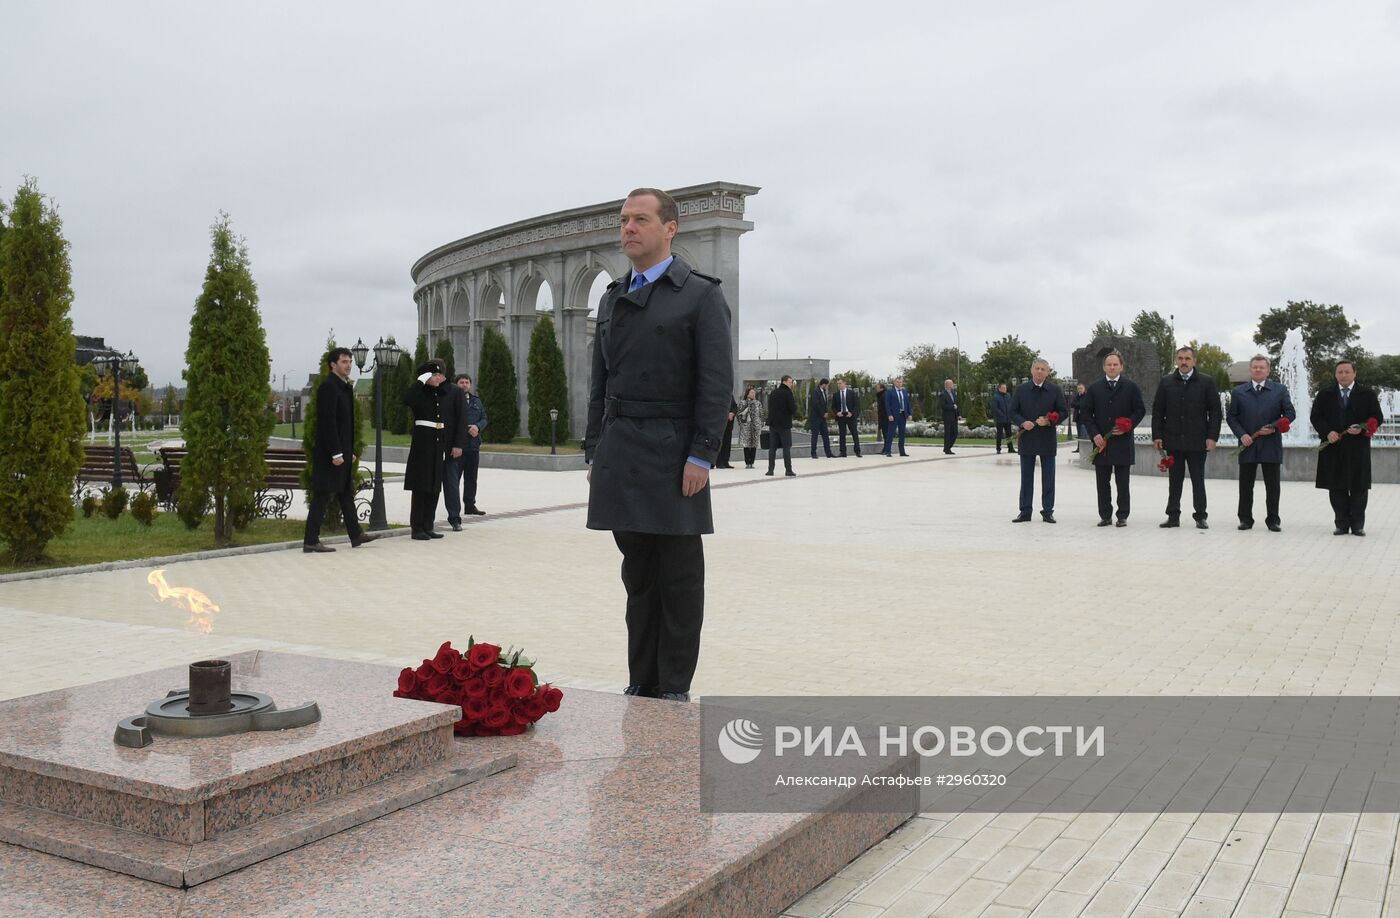 Рабочая поездка премьер-министра РФ Д. Медведева в Ингушетию